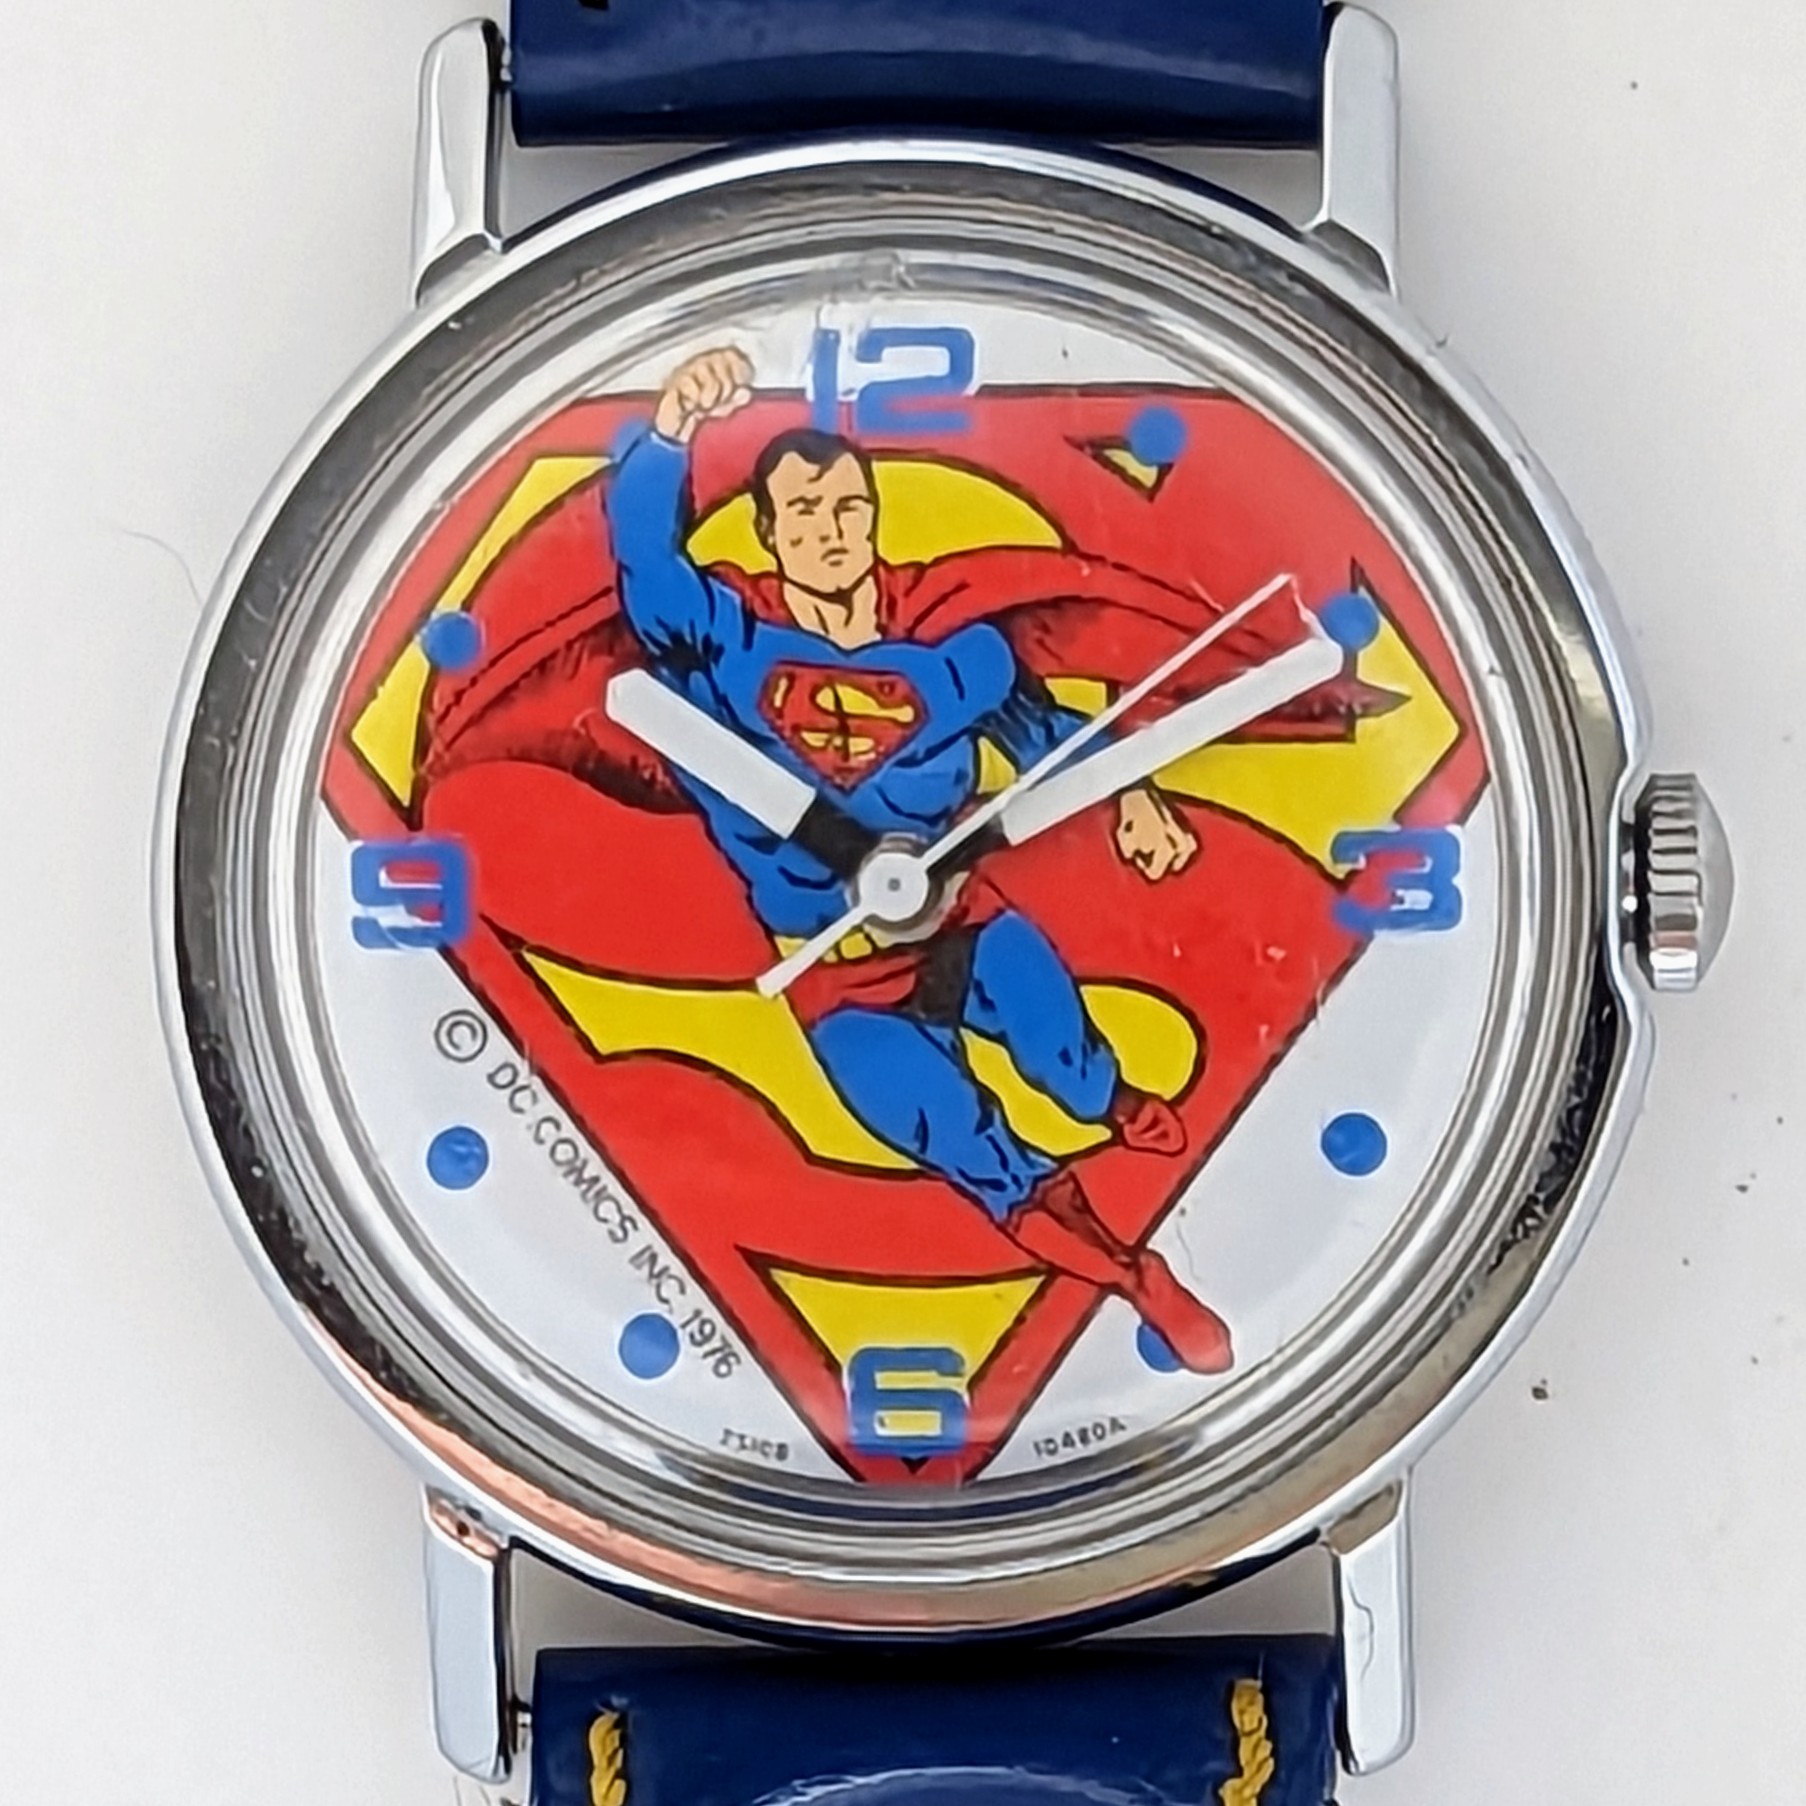 Timex Superman Watch [Mercury] 25108 10480A [1980]